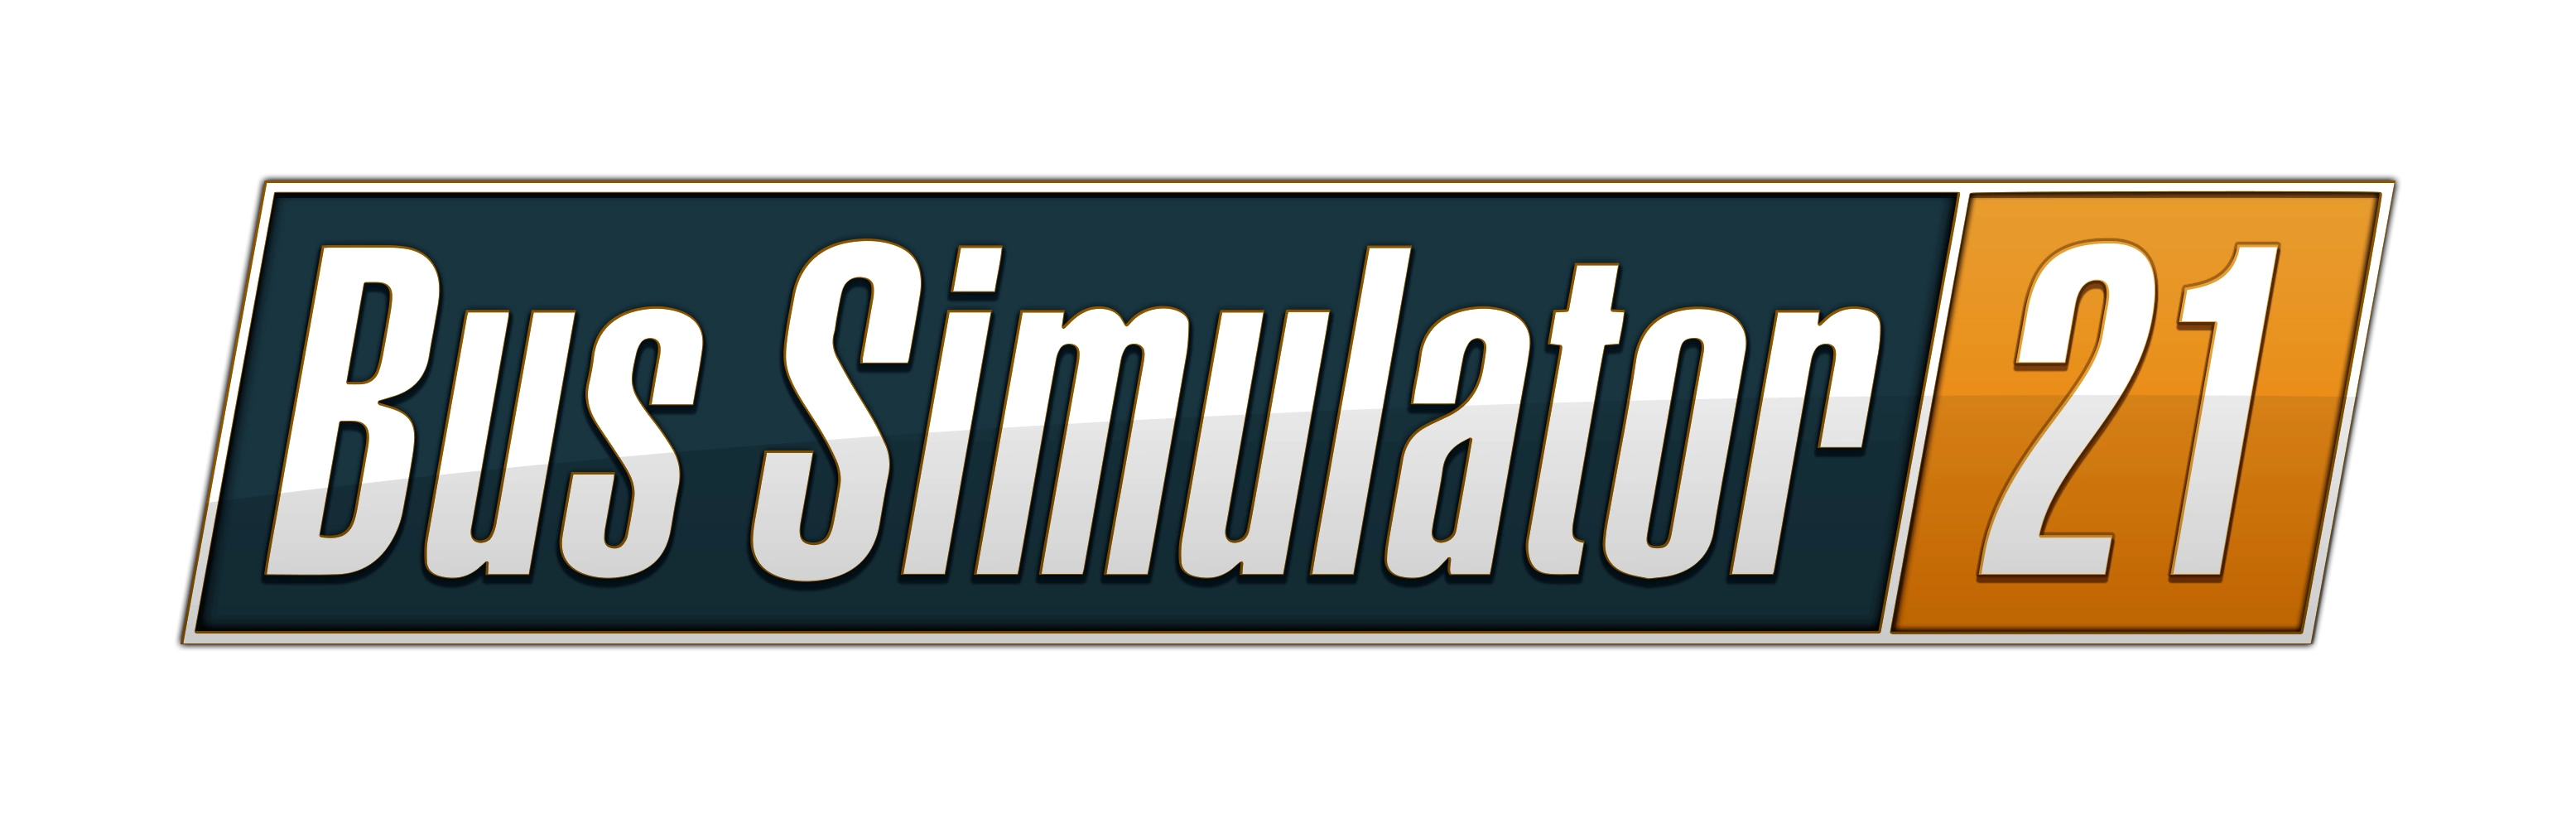 логотип Bus Simulator 21